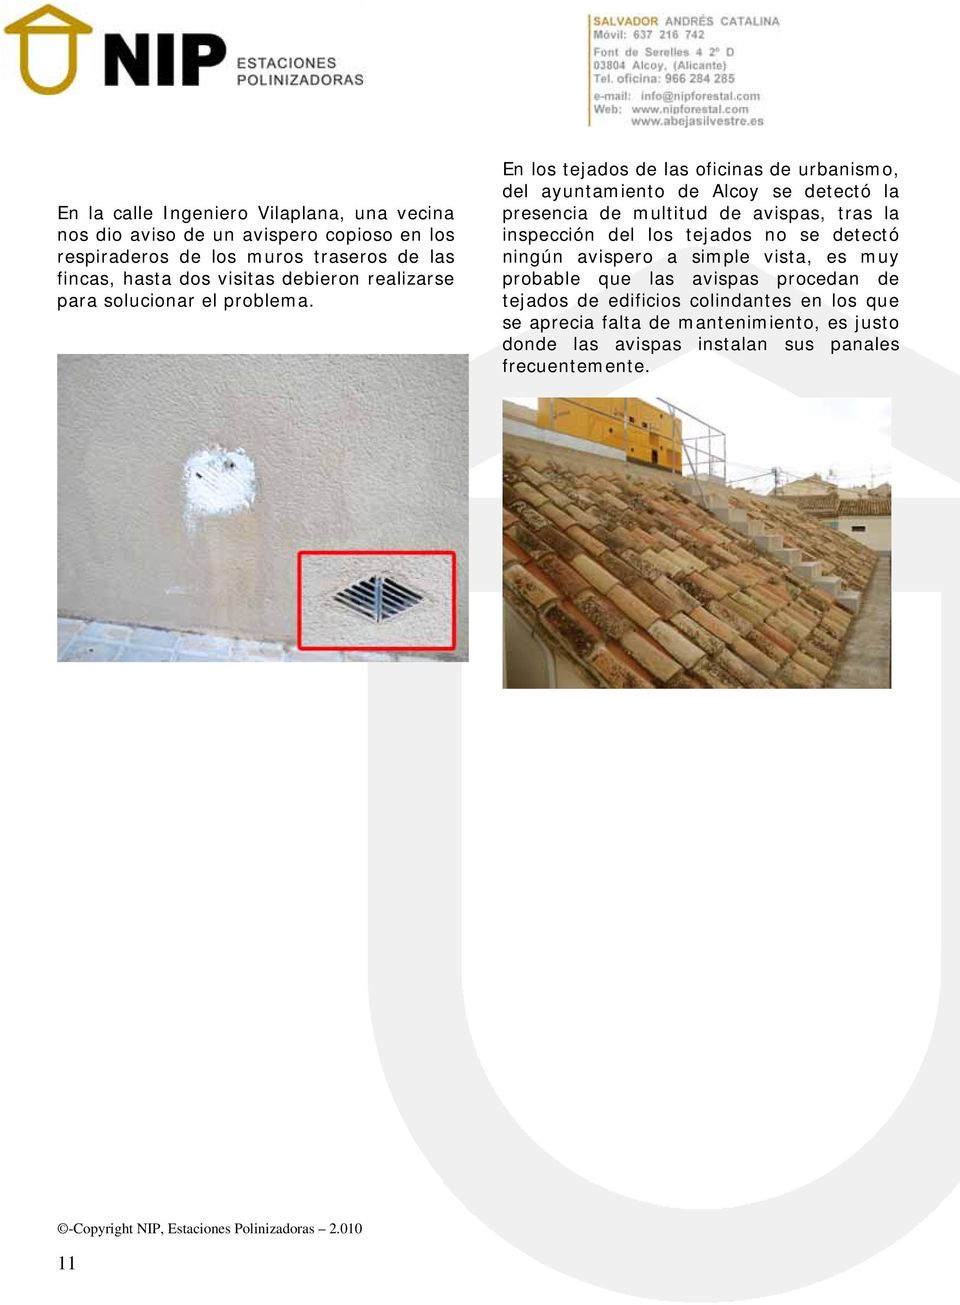 En los tejados de las oficinas de urbanismo, del ayuntamiento de Alcoy se detectó la presencia de multitud de avispas, tras la inspección del los tejados no se